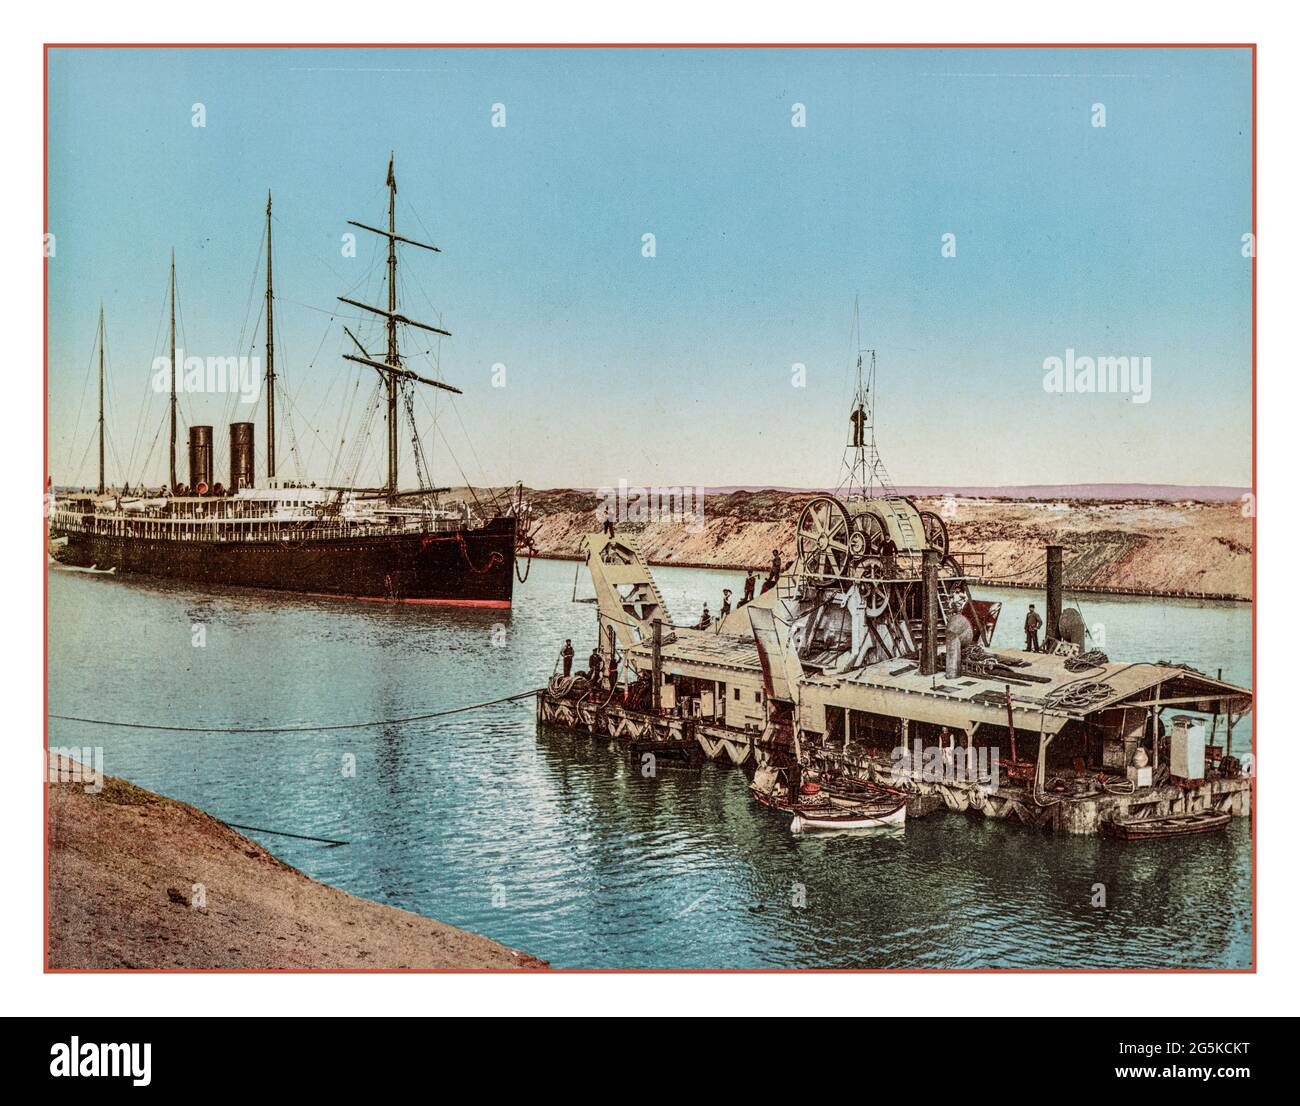 Suez-Kanal-Baggermaschine des Jahrgangs 1900, Ägypten. Suez Canal Bau Wartungsschiff und Baggermaschine.Photoglob Co., Verlag Zürich Photoglob Company [ca. 1890-1910] Archiv Stockfoto